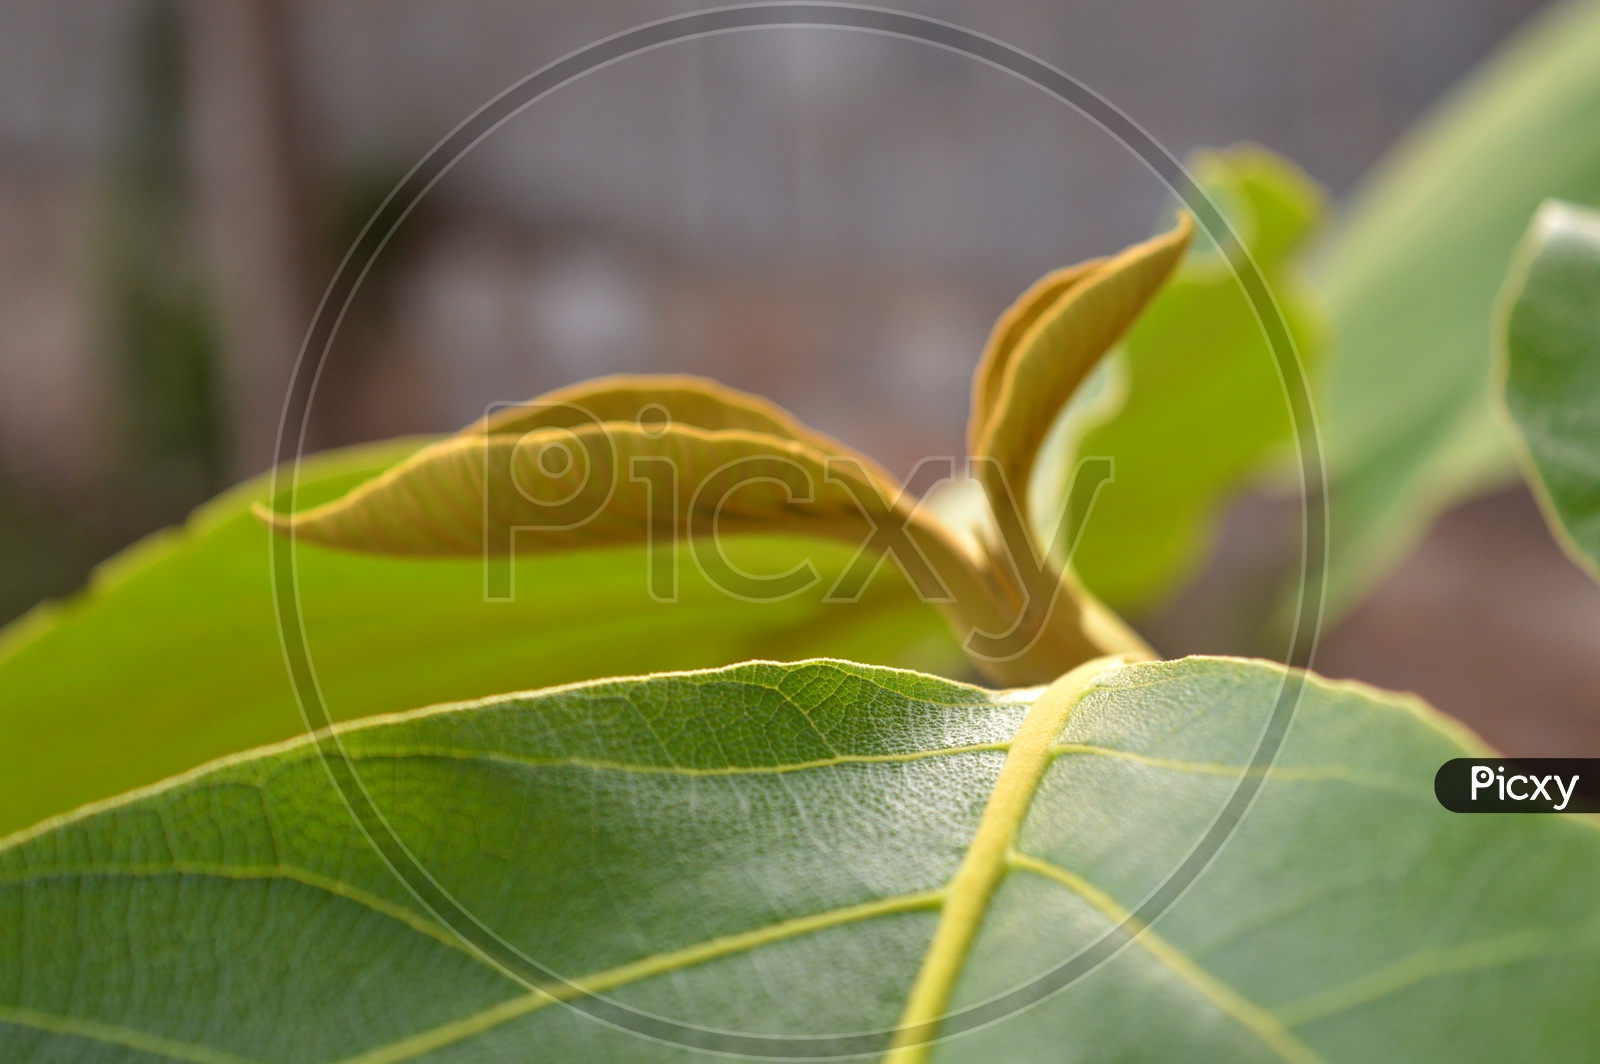 teak wood leaf